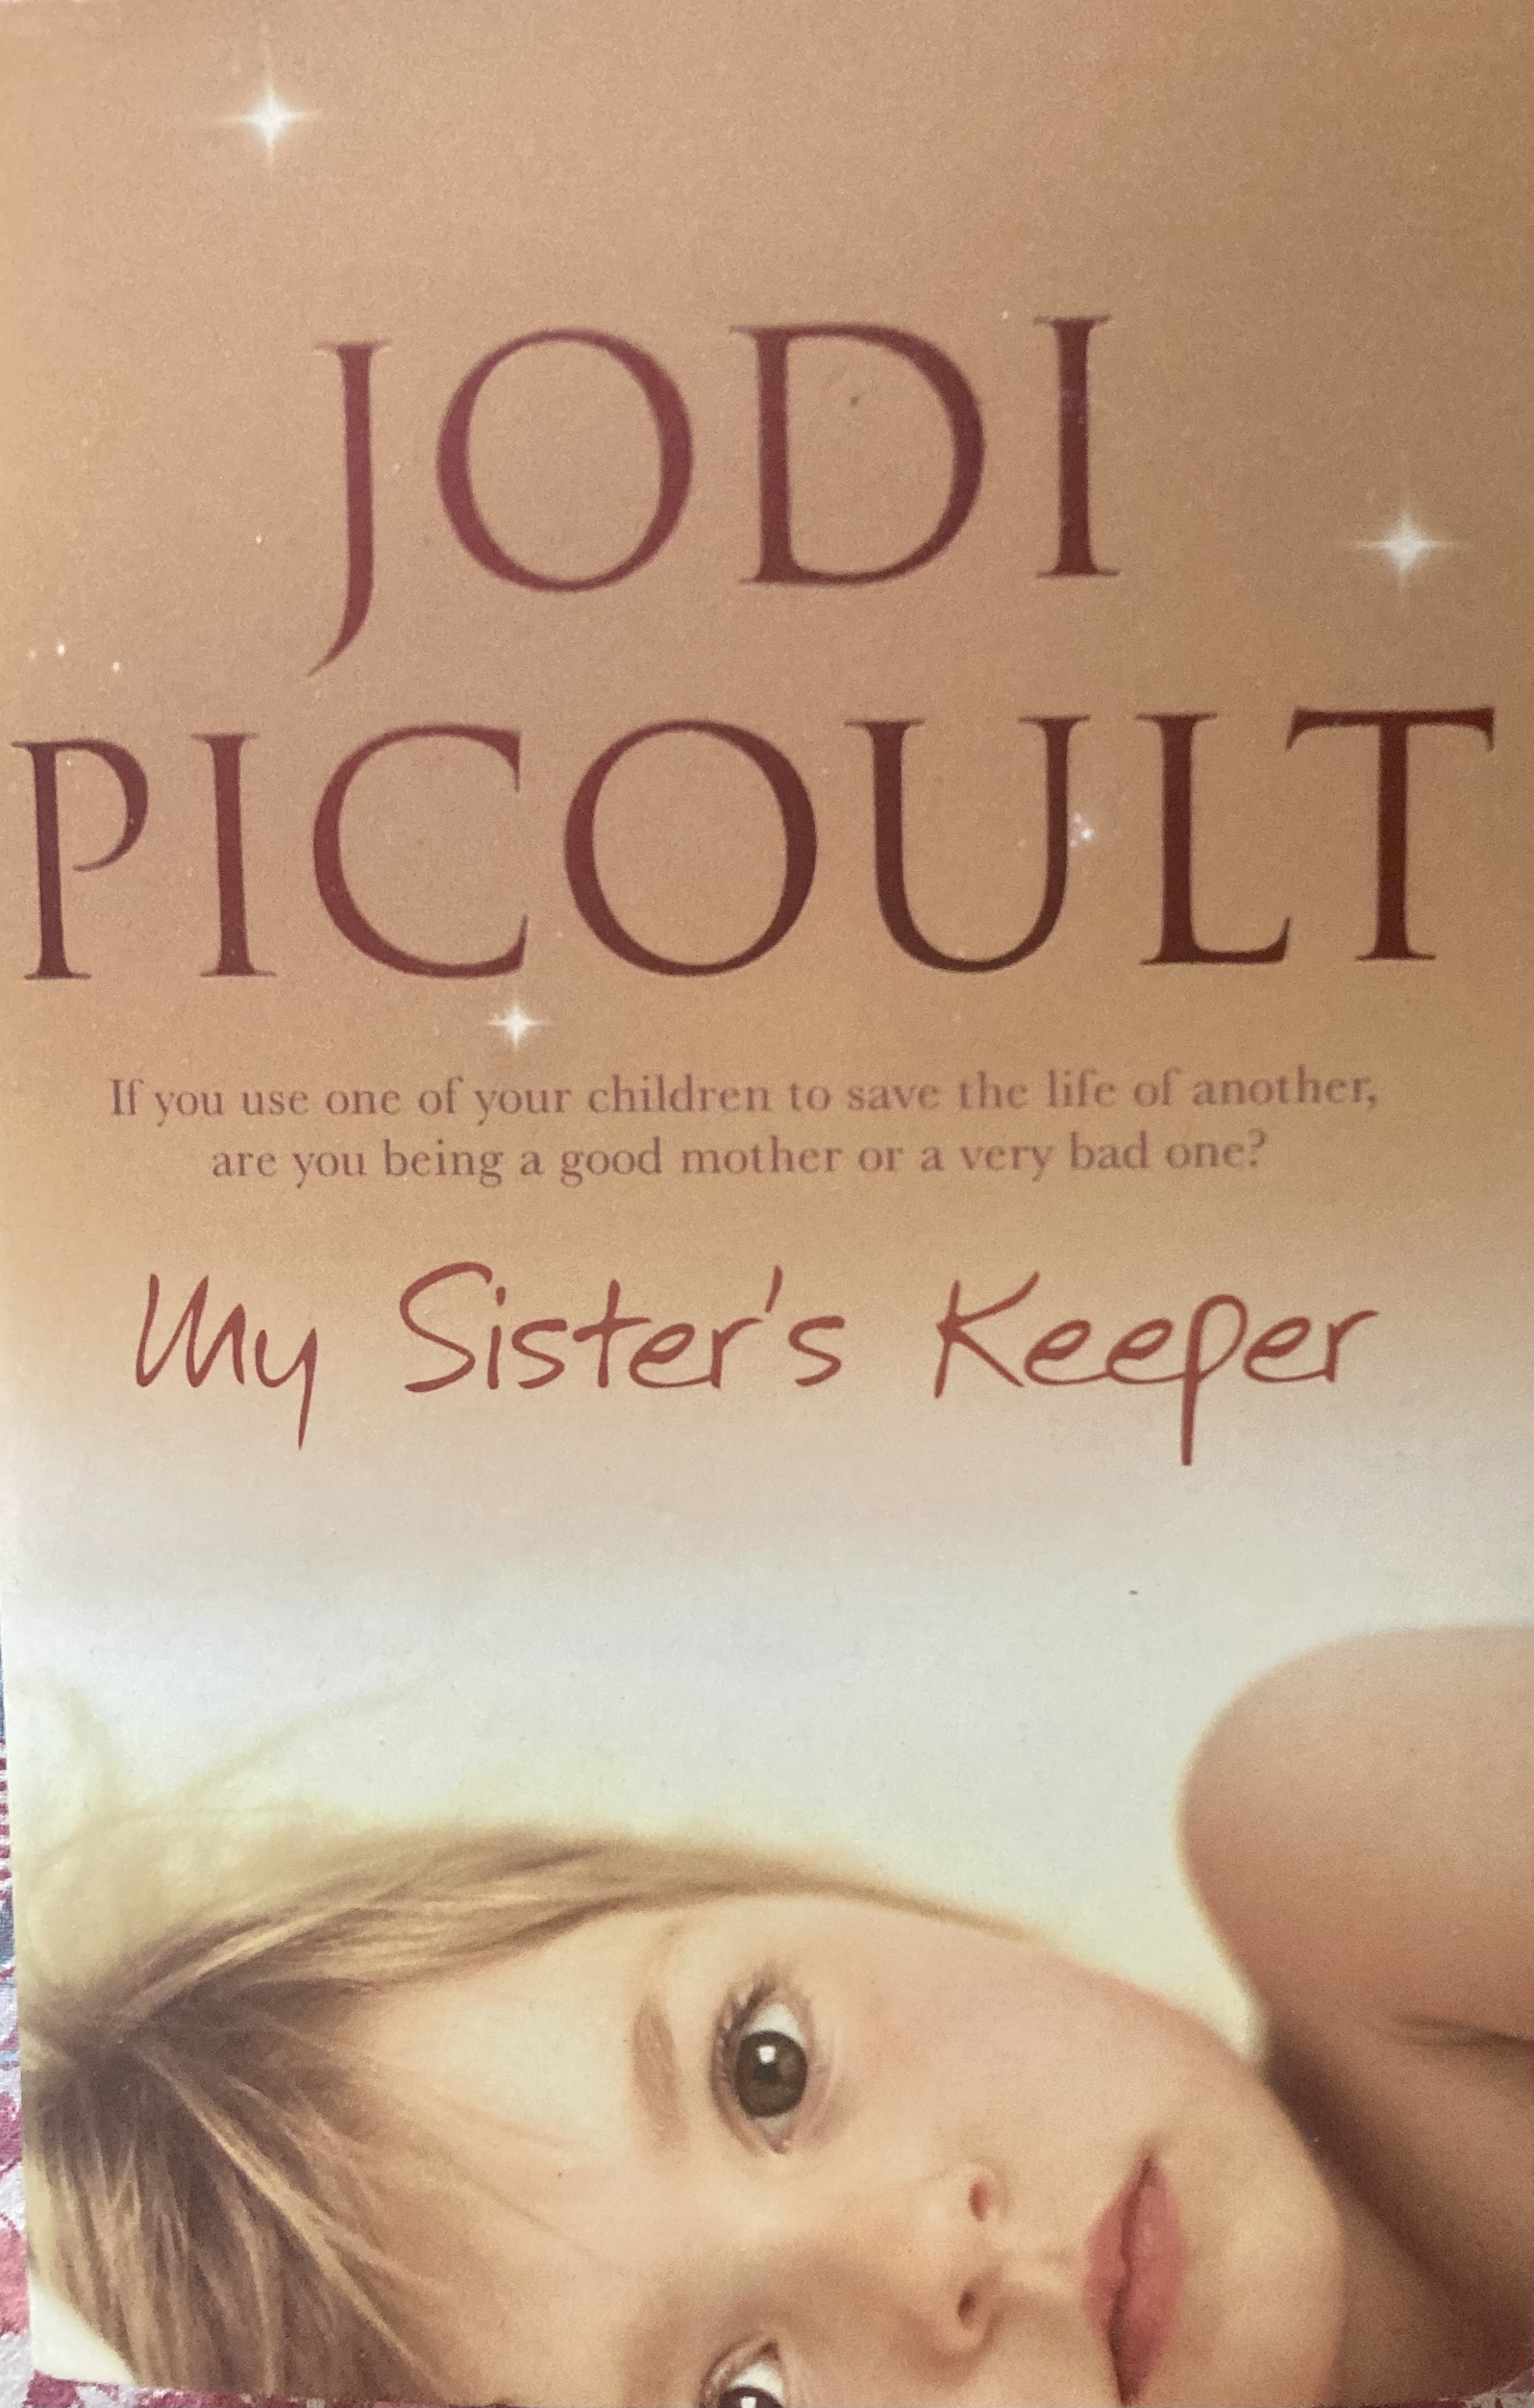 Ma vie pour la tienne, Jodi Picoult